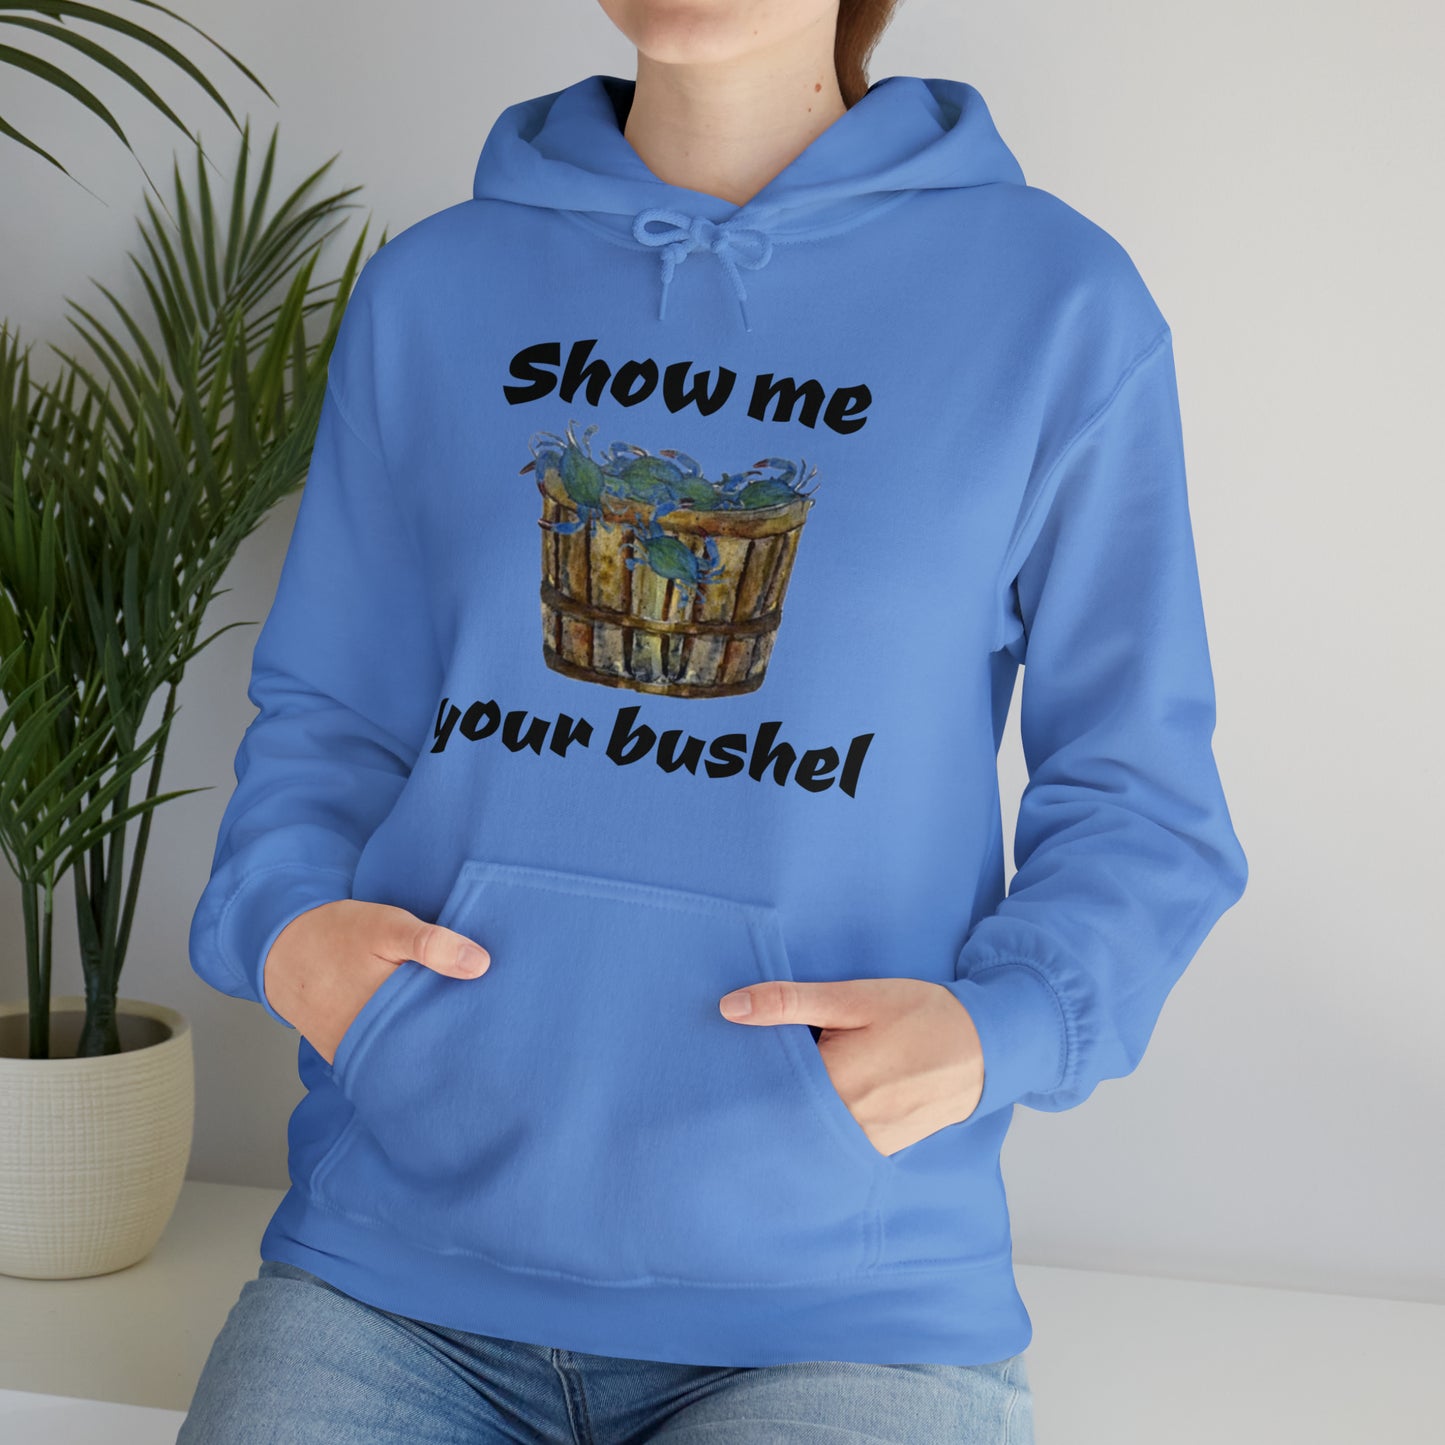 Show me your bushel Hooded Sweatshirt